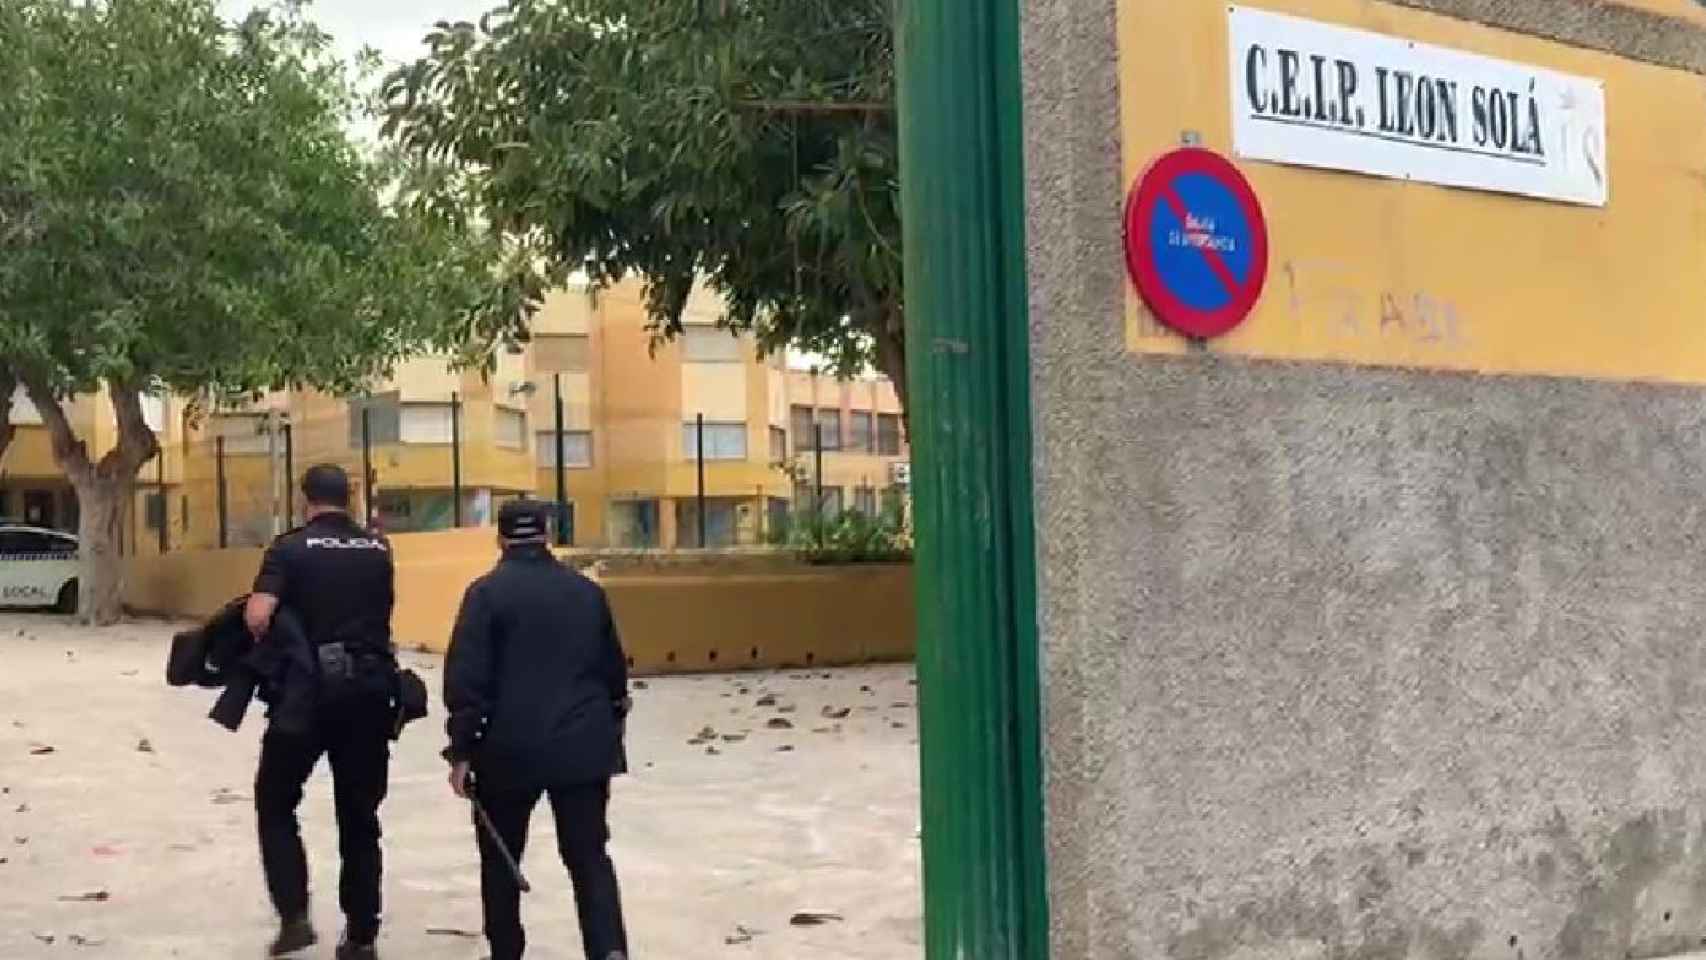 Dos agentes de Policía Nacional entran en el CEIP León Solá, donde ha tenido lugar la emisión deun voto irregular.